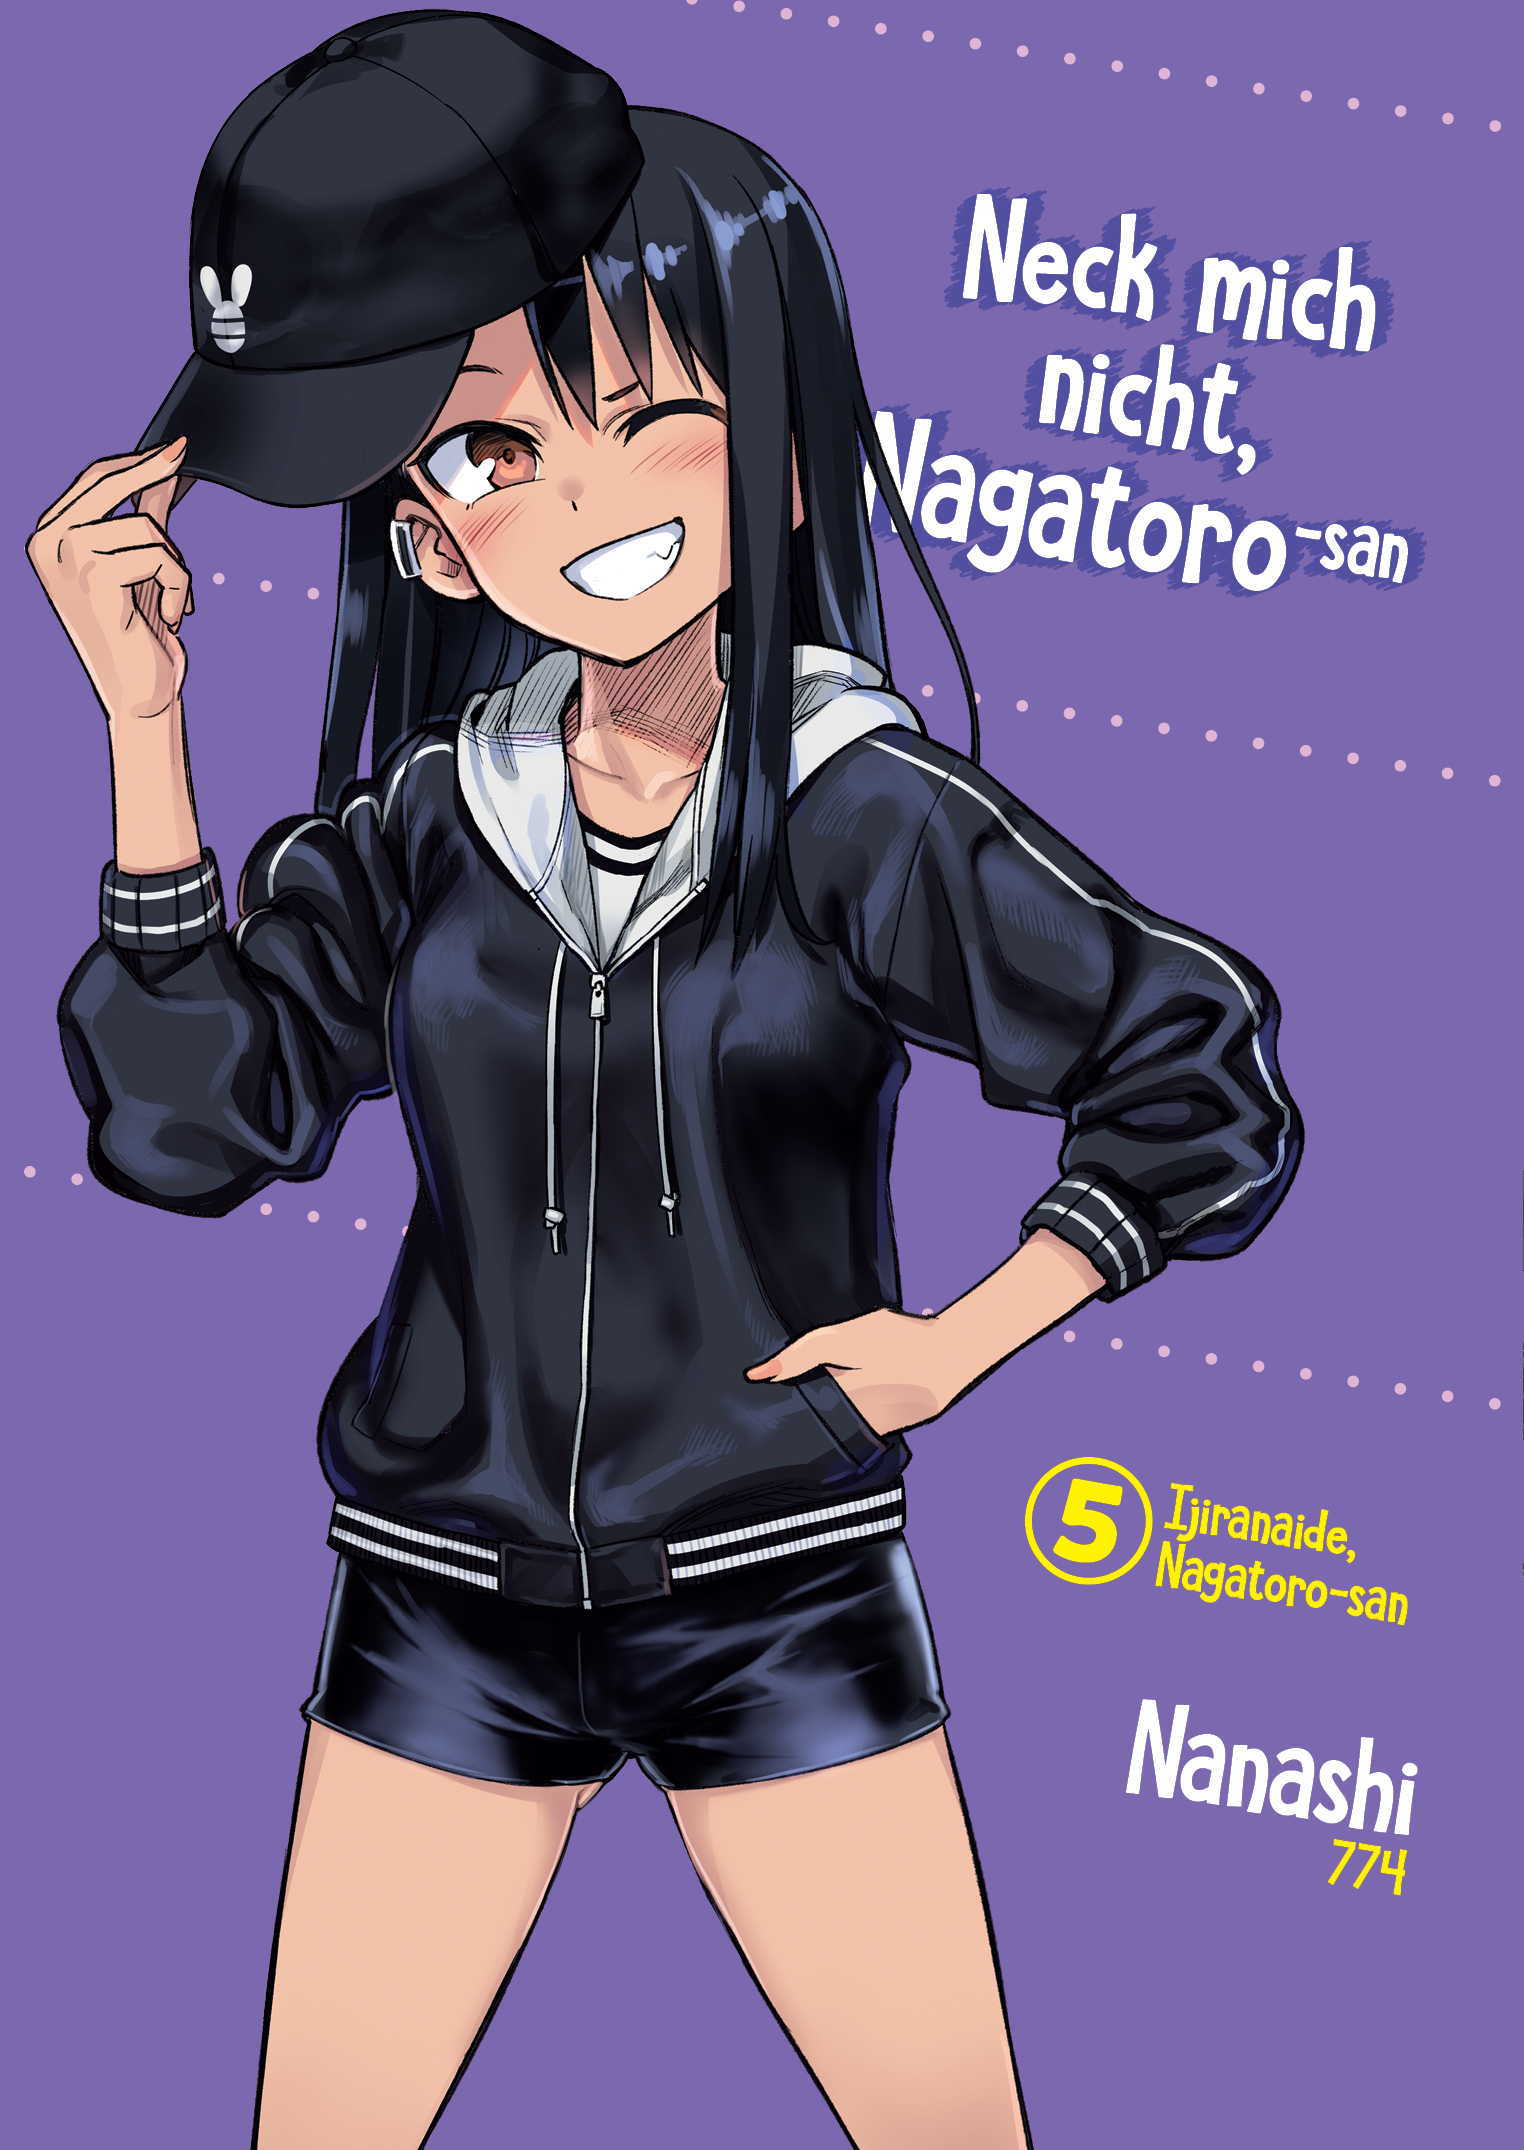 Neck mich nicht, Nagatorosan 05 Manga (Neu)